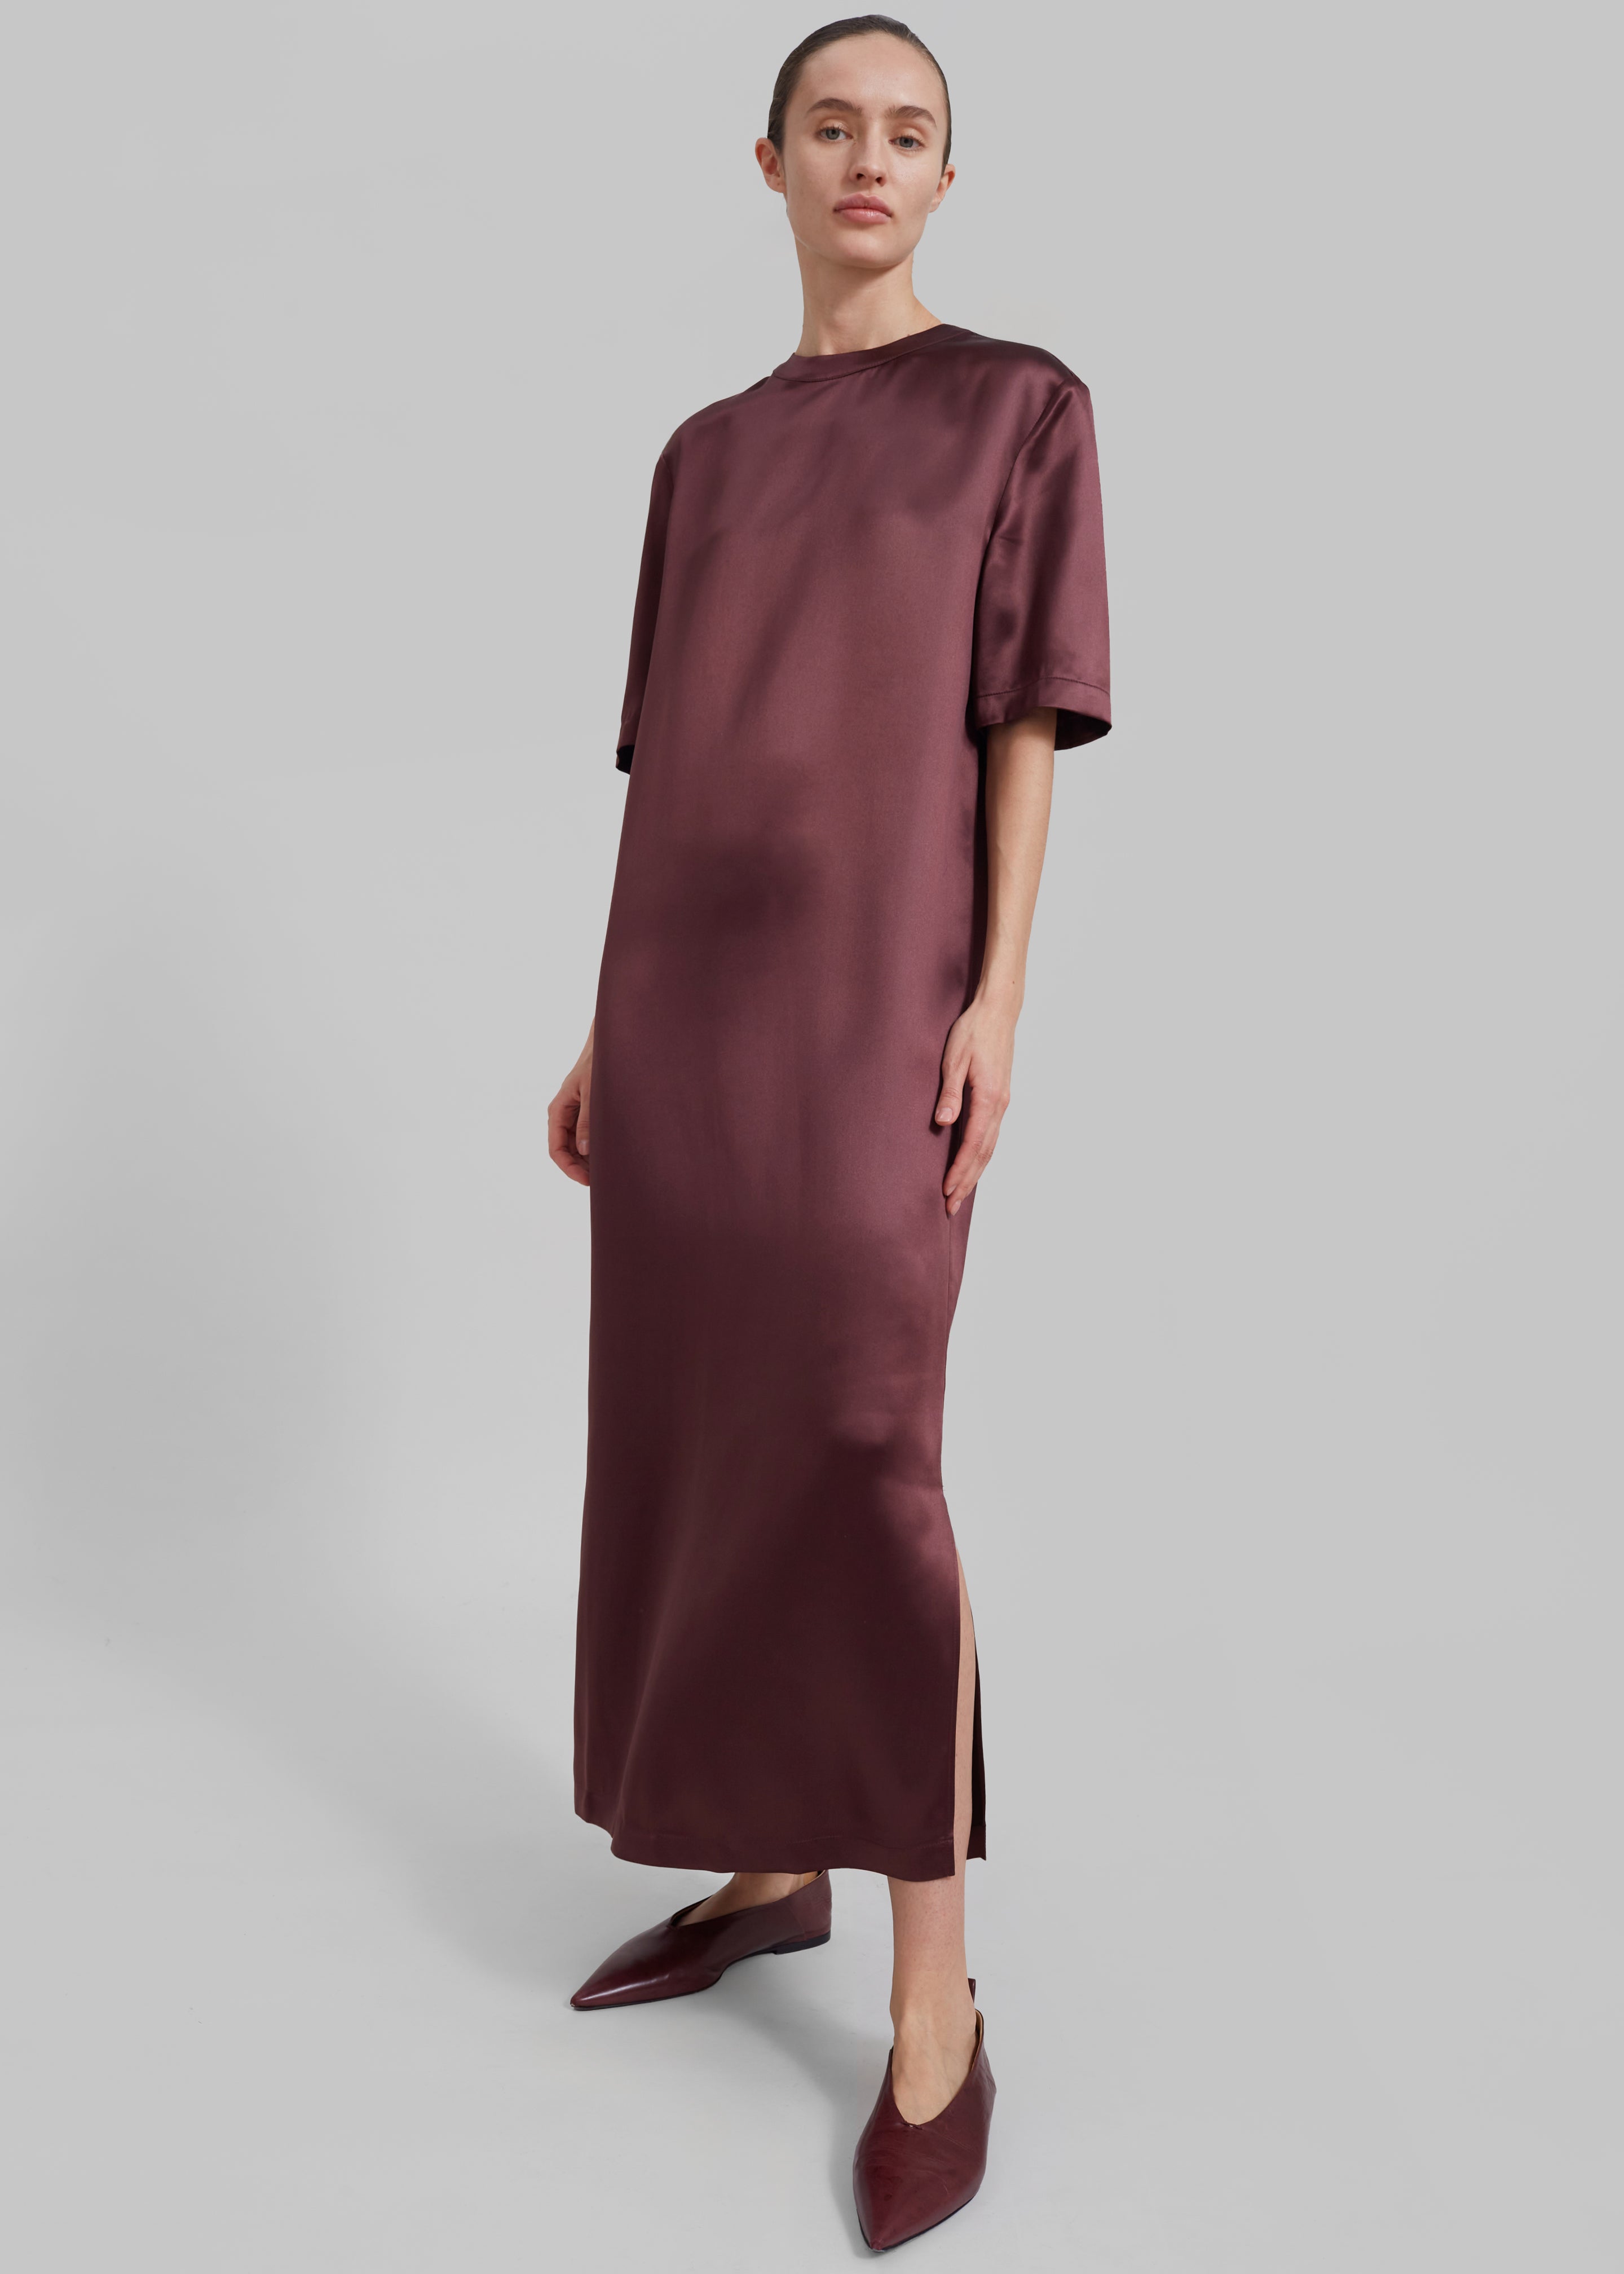 Loulou Studio Tuga Satin T-Shirt Dress - Midnight Bordeaux - 2